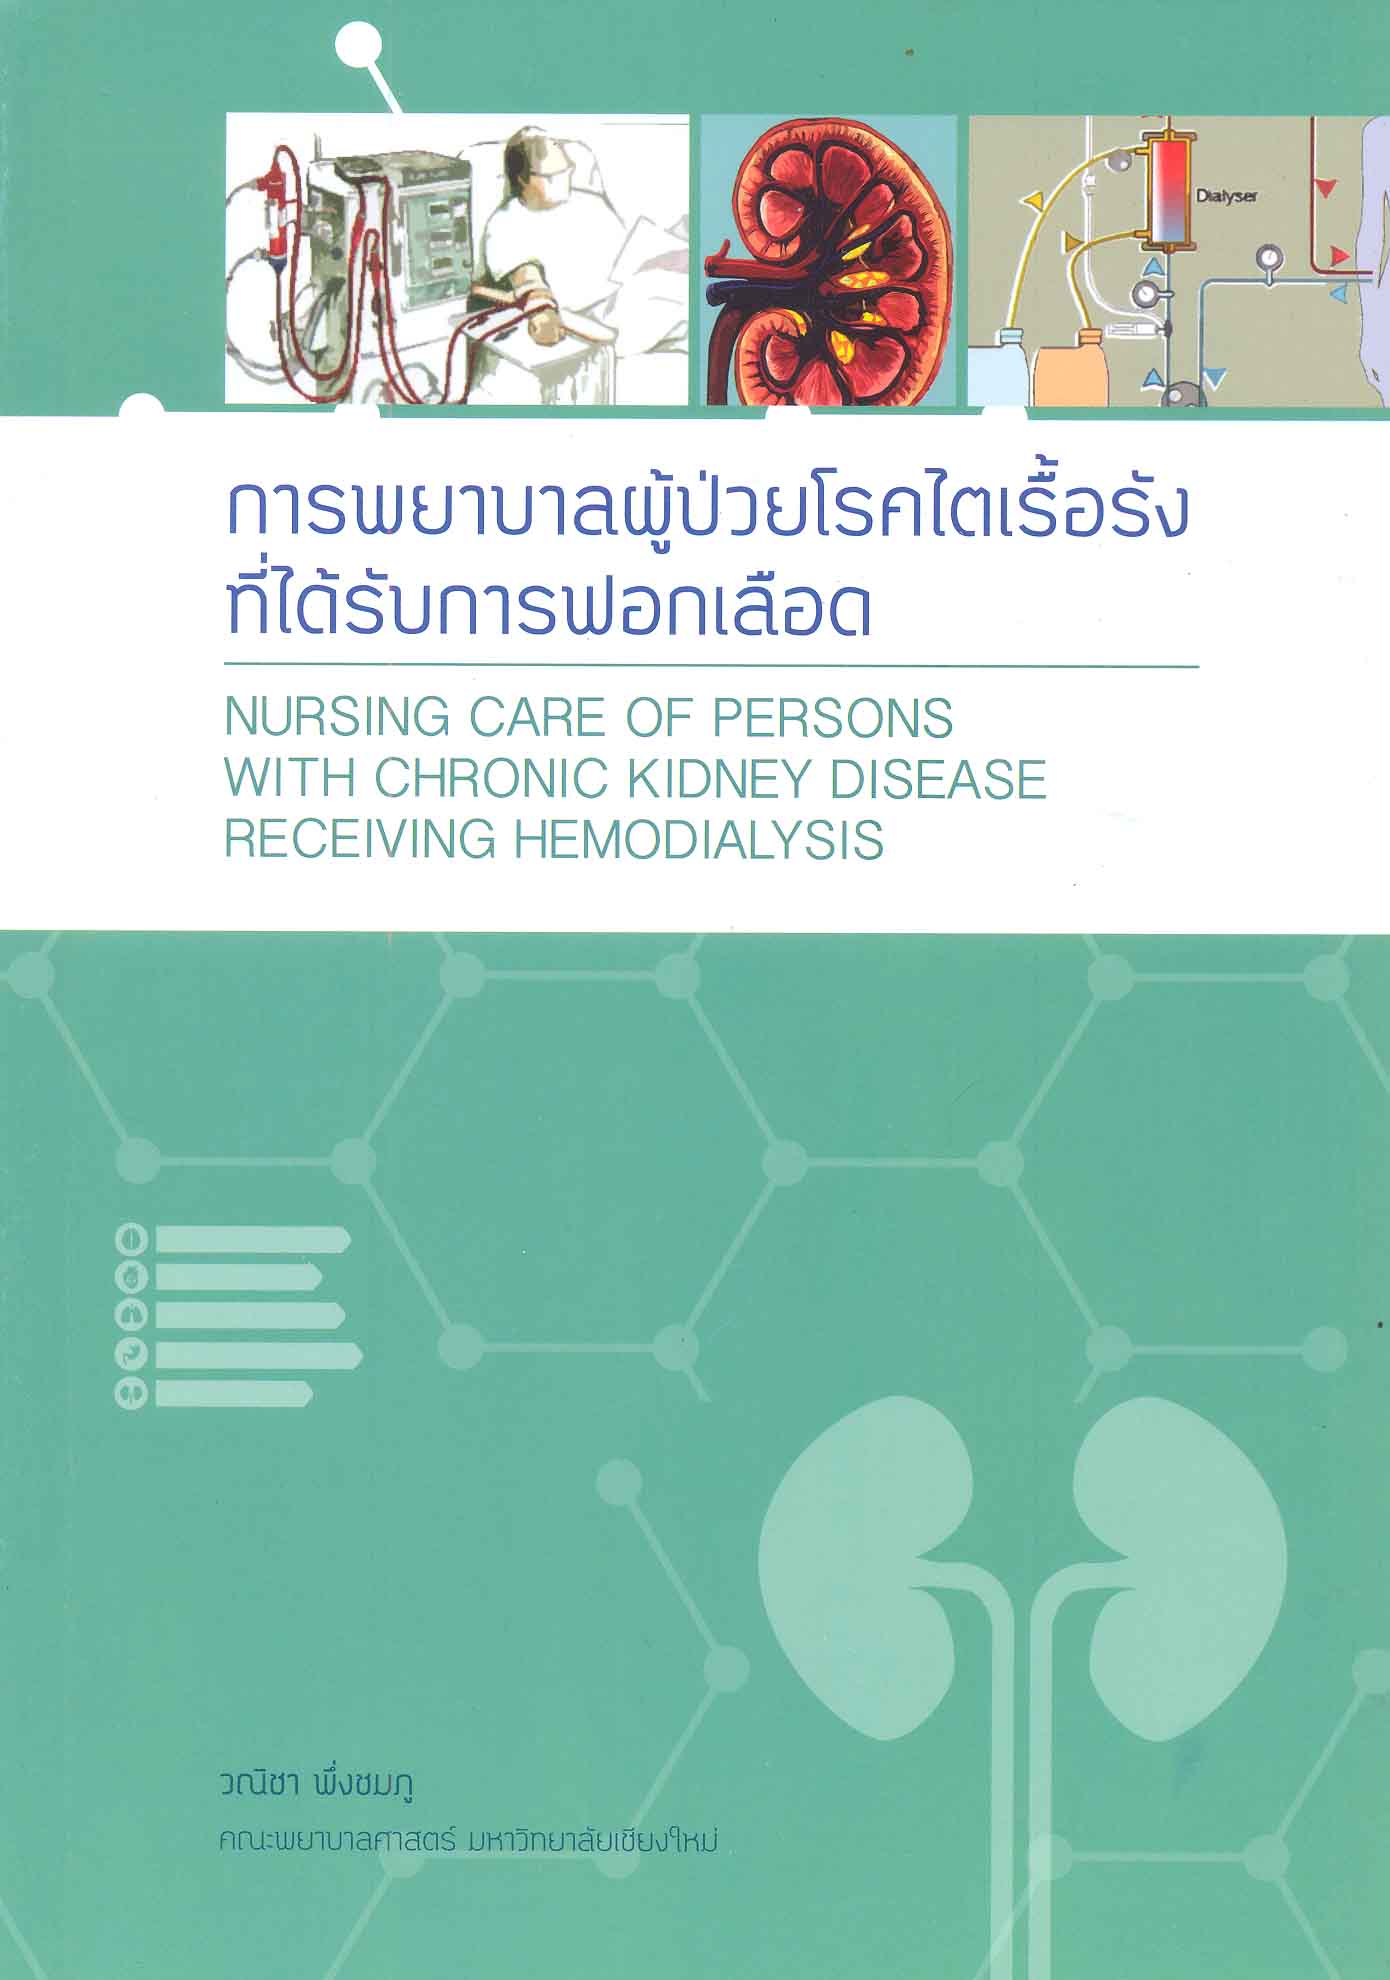 การพยาบาลผู้ป่วยโรคไตเรื้อรังที่ได้รับการฟอกเลือด = Nursing care of persons with chronic kidney disease receiving hemodialysis